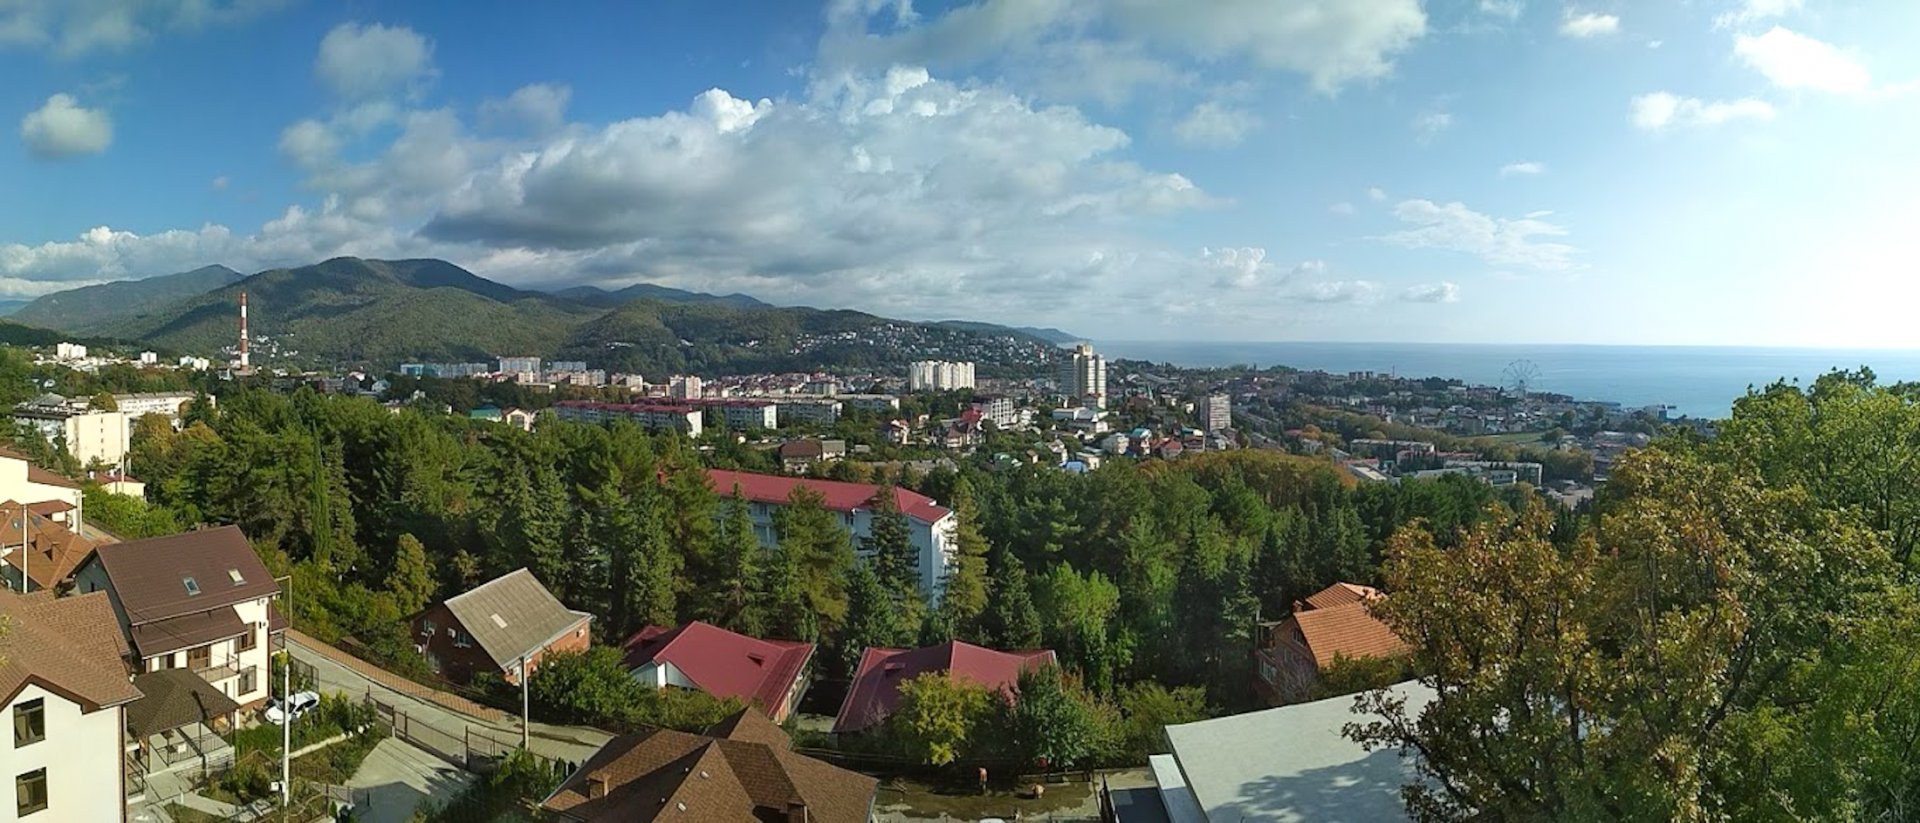 Панорама поселка Лазаревское, Большой Сочи